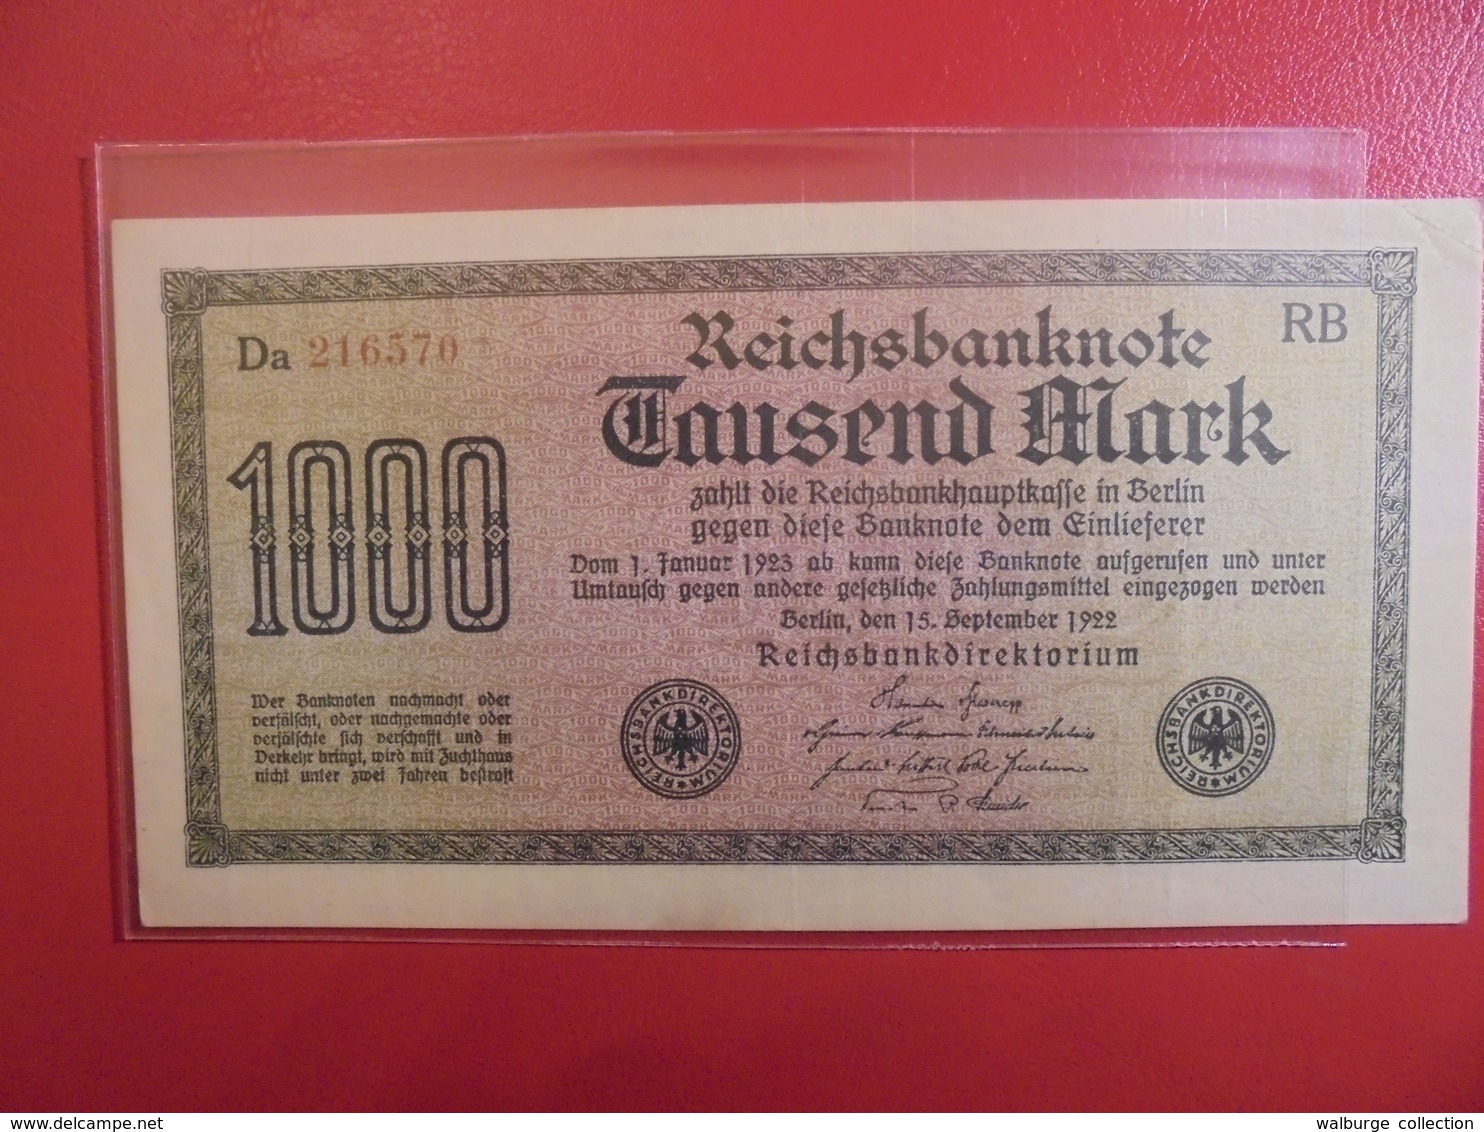 Reichsbanknote 1000 MARK 1922 VARIETE N°1 - 1000 Mark